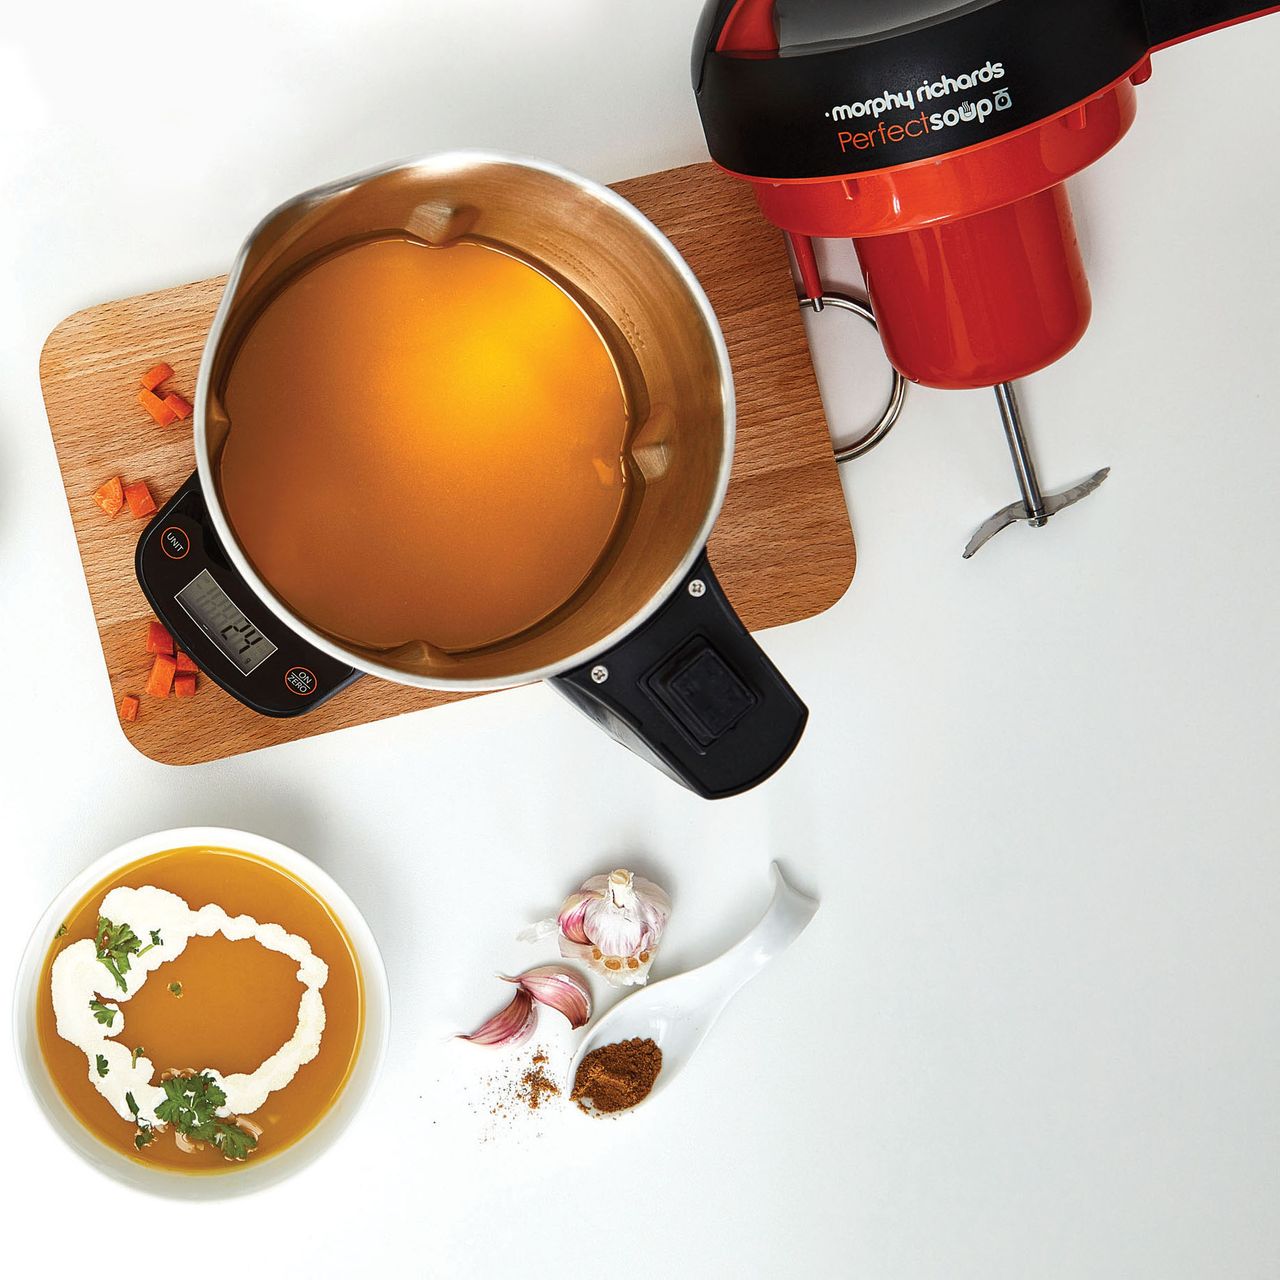 Morphy Richards Perfect Soup 501025 1.6 Litre Soup Maker Review